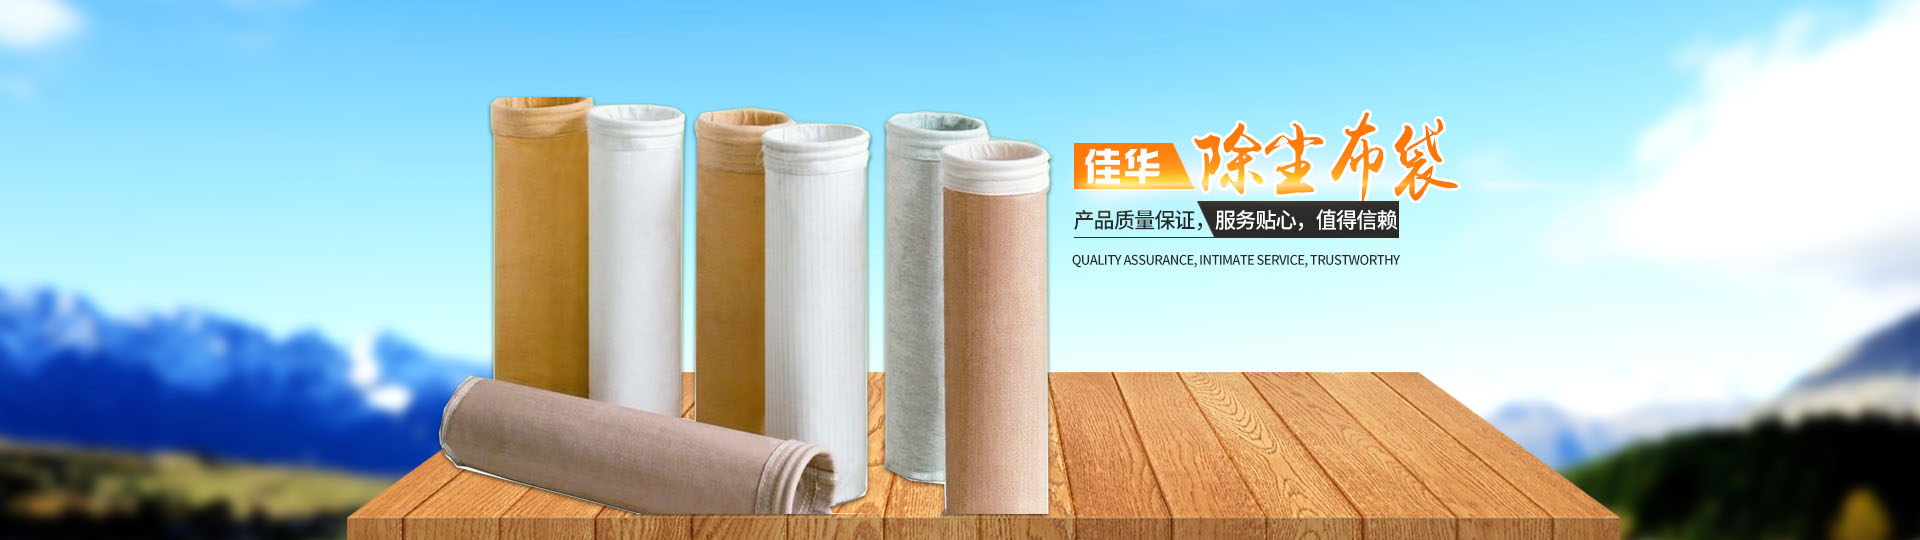 湖南佳华环保产业有限公司_工业滤布滤料|湖南除尘器价格|过滤袋生产厂家